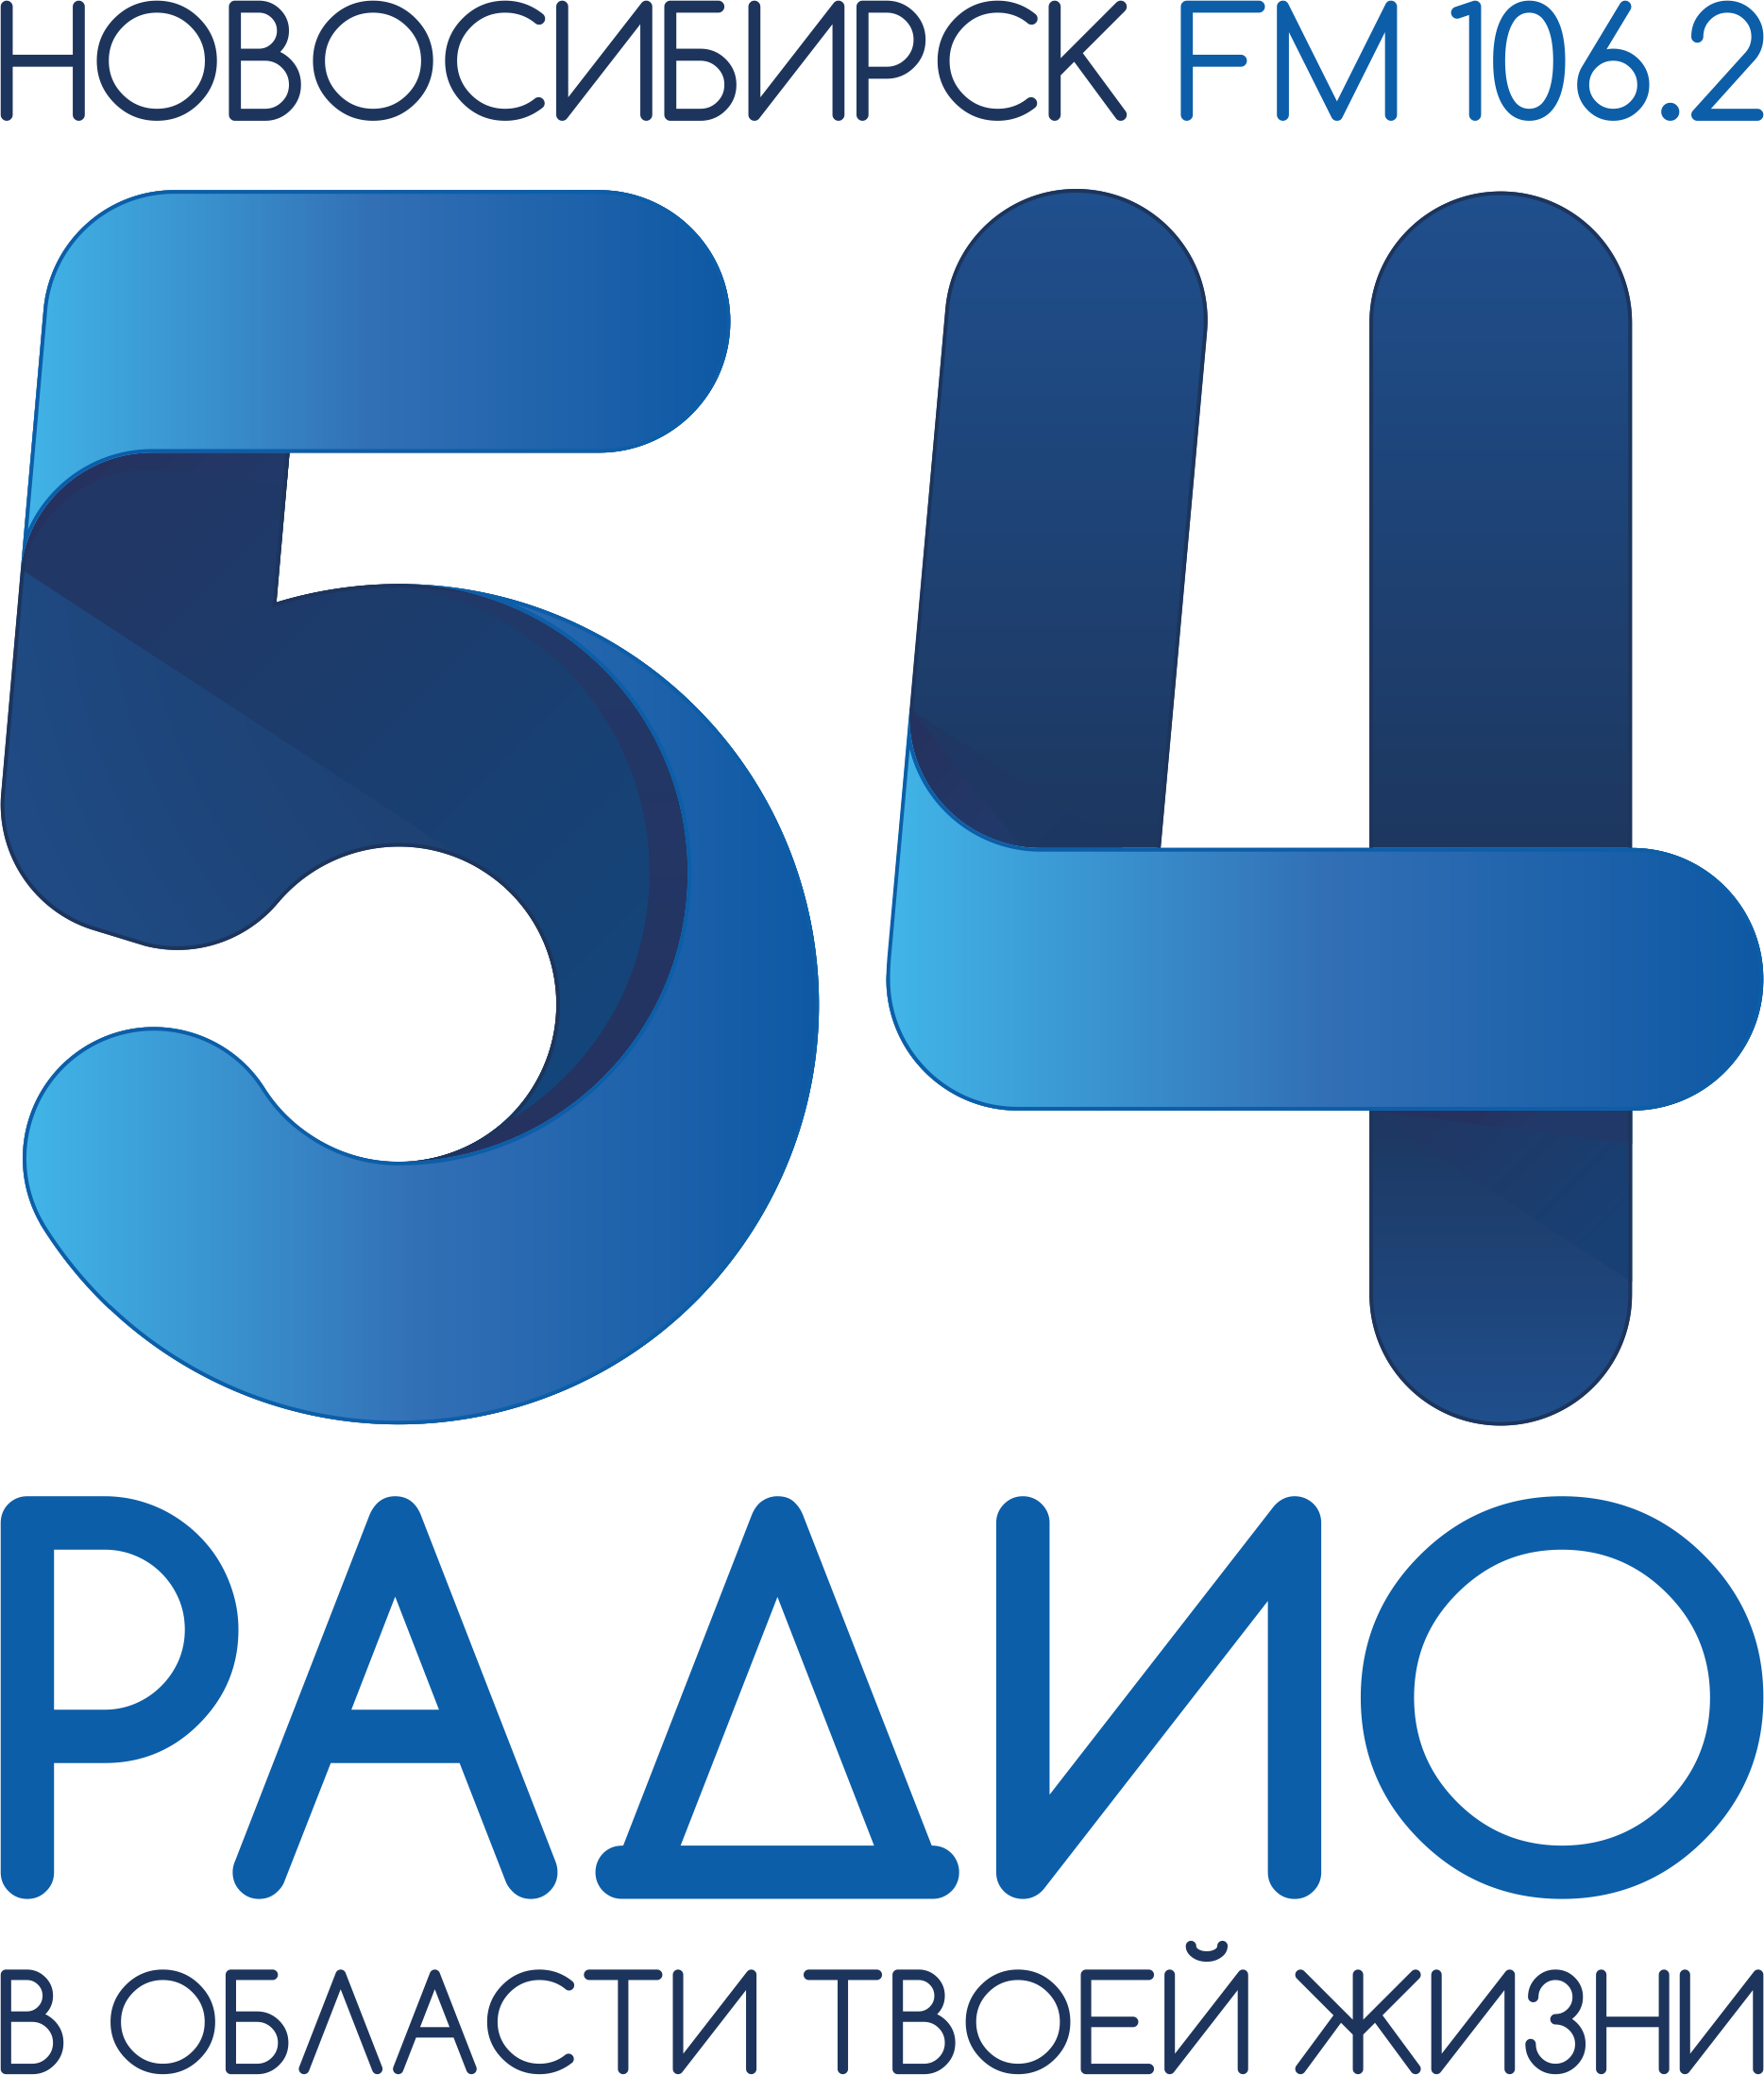 Радио 54 новосибирск 106.2 слушать. Радио. Радио ФМ Новосибирск. Новосибирские радиостанции. Радио 54.